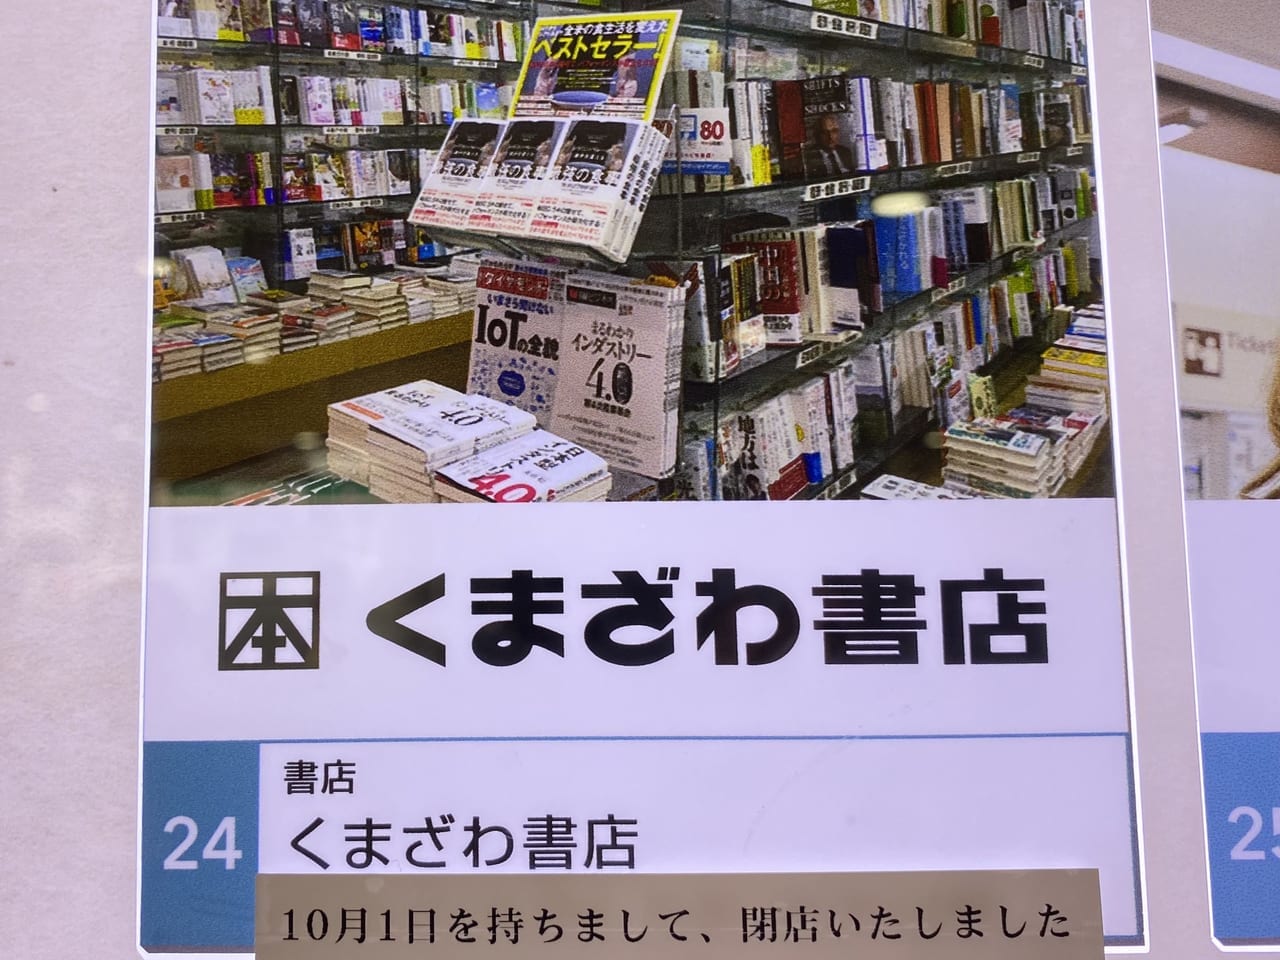 くまざわ書店京急蒲田店が閉店